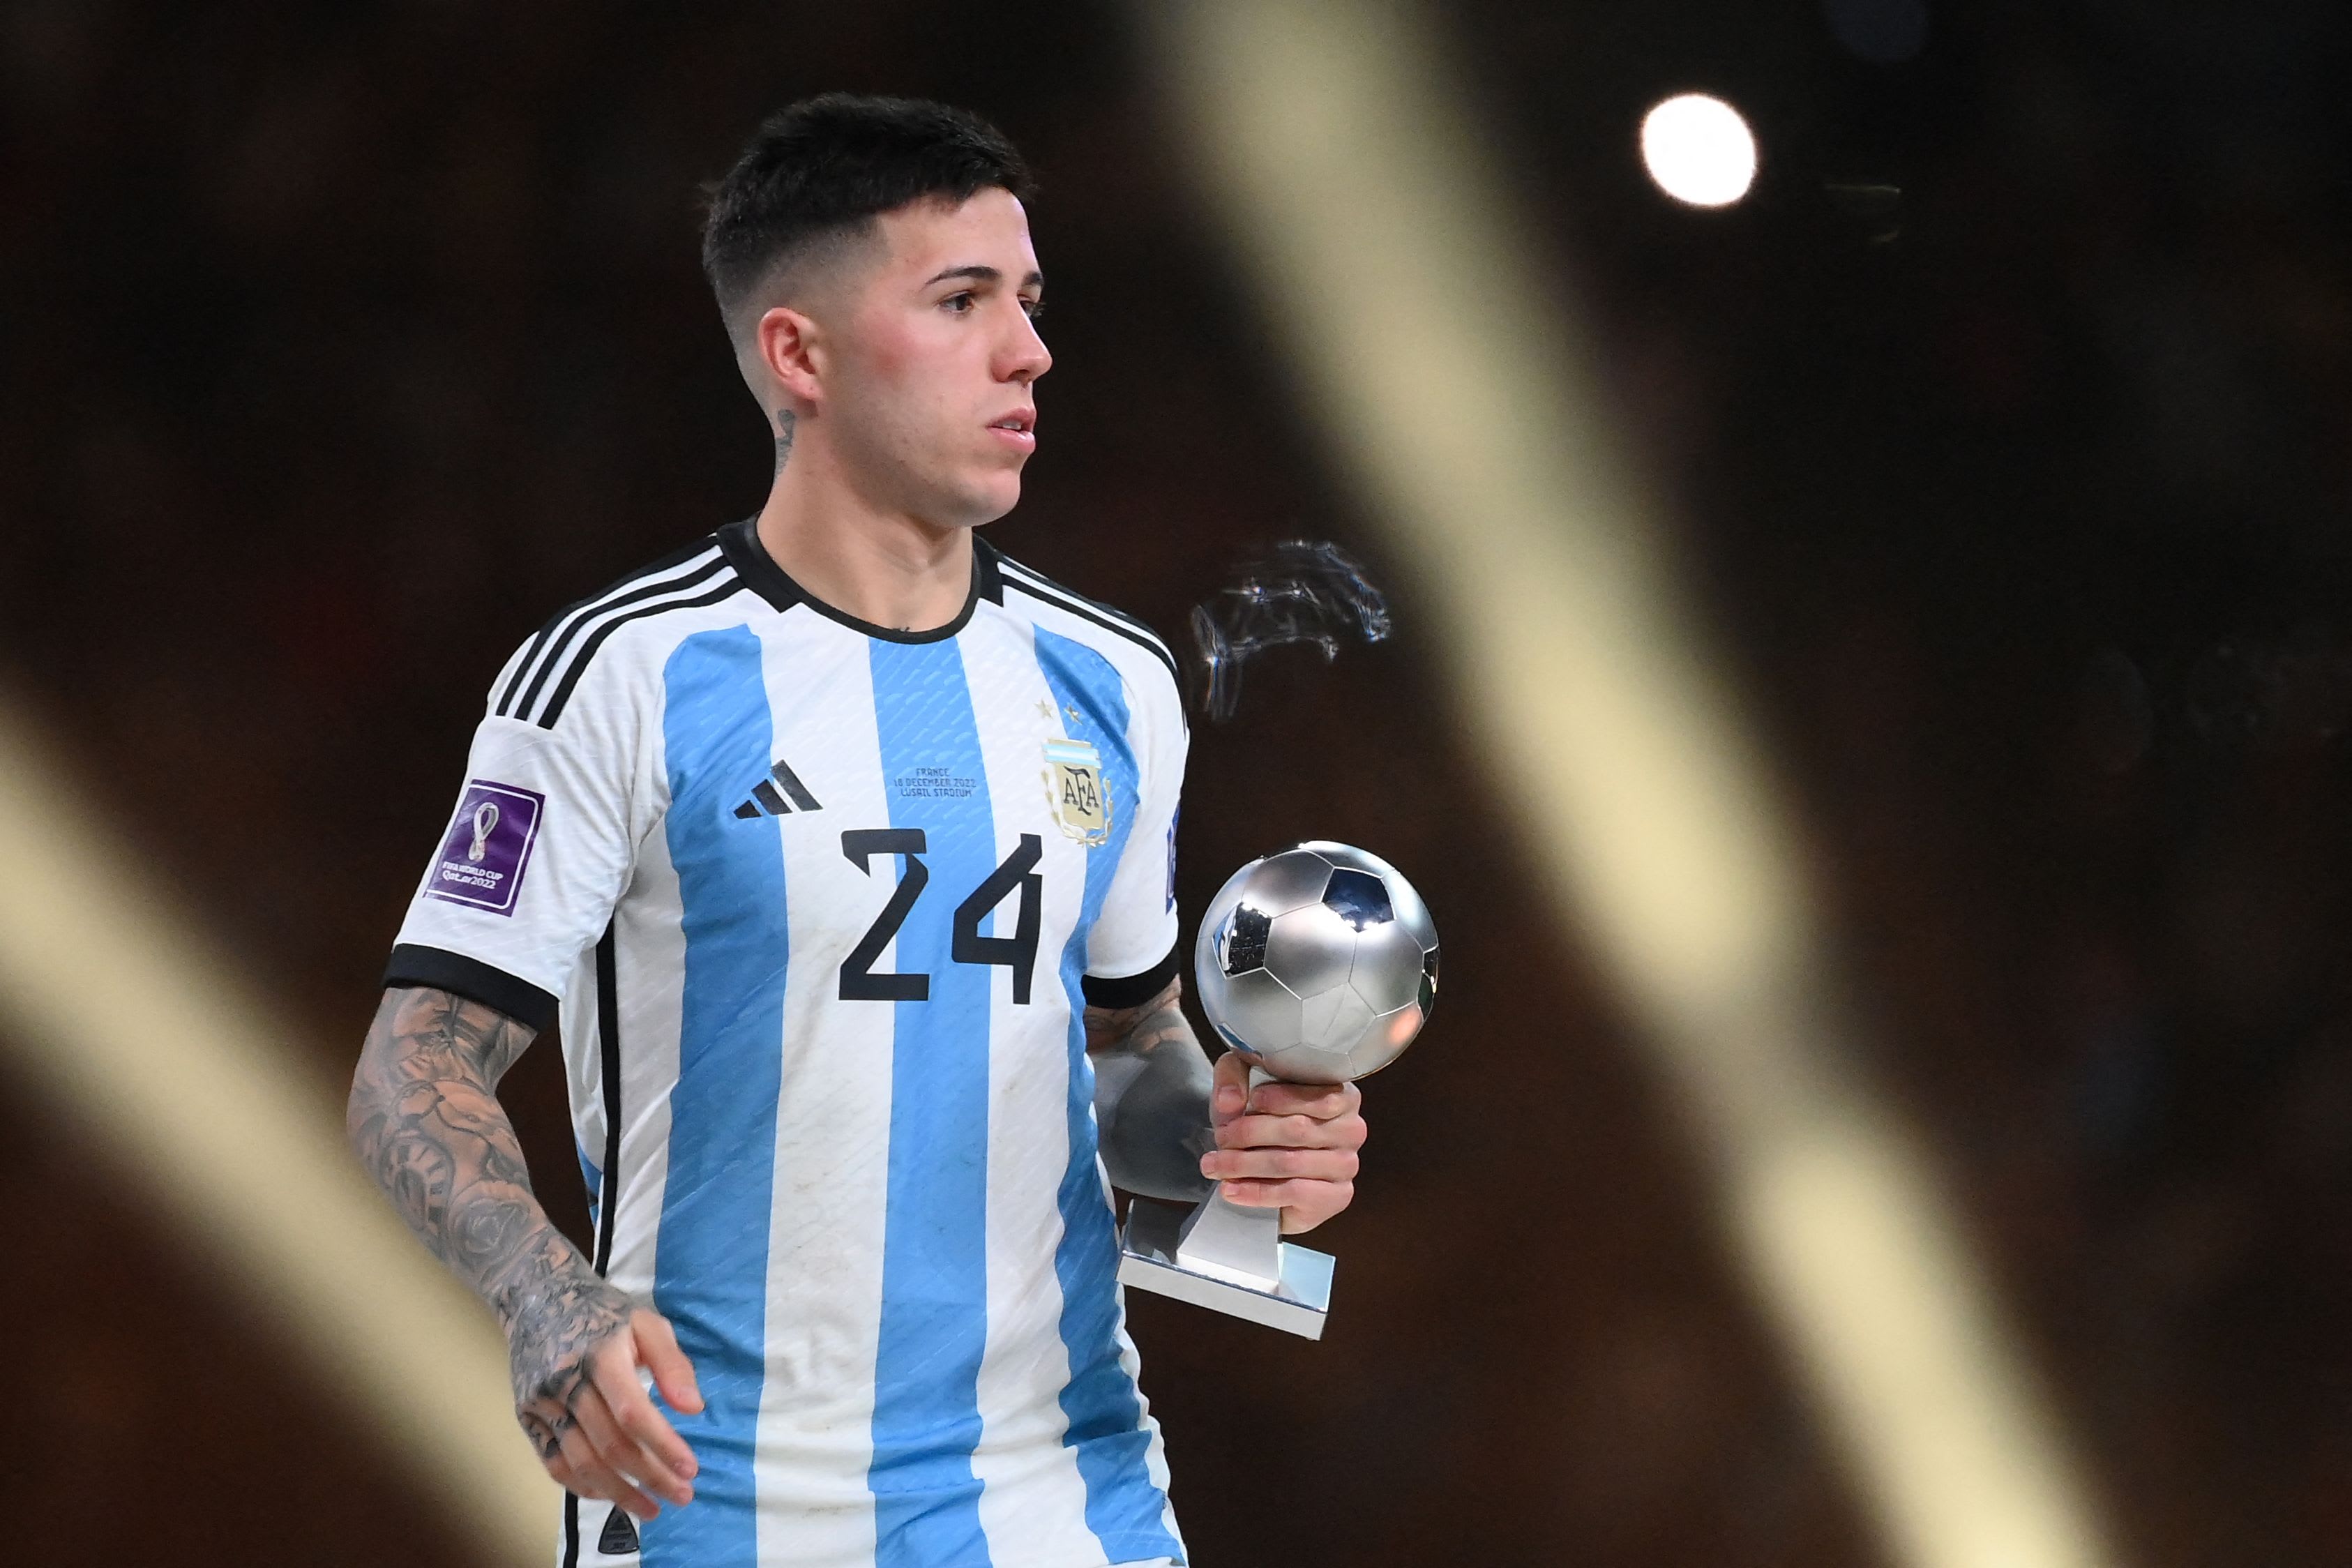 שחקן נבחרת ארגנטינה, אנסו פרננדס, הצעיר המצטיין של מונדיאל 2022